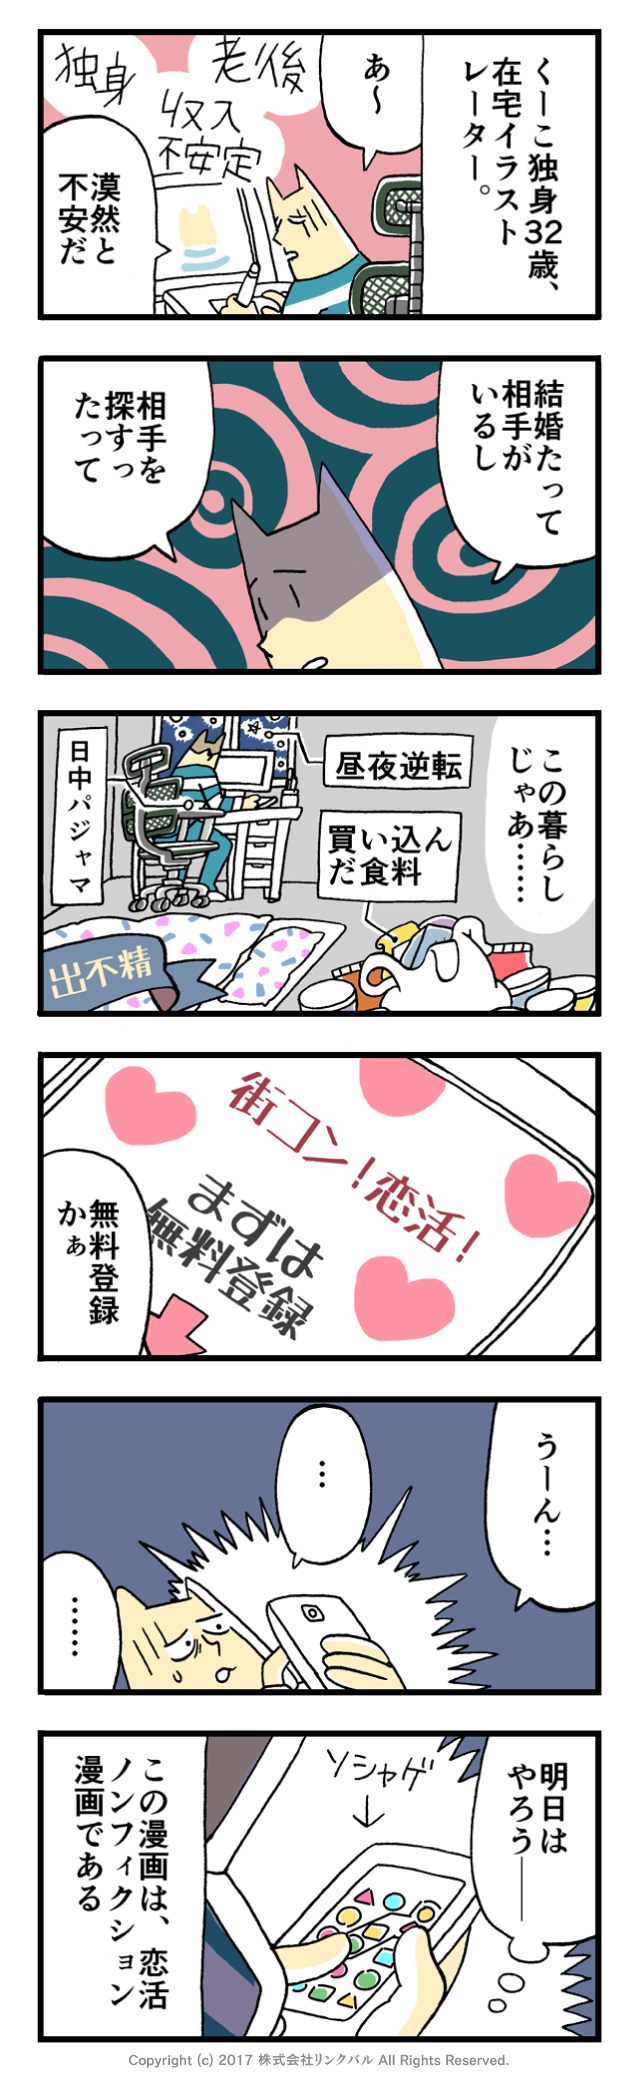 【婚活漫画】アラサー街コン物語・第1話「老後の不安」